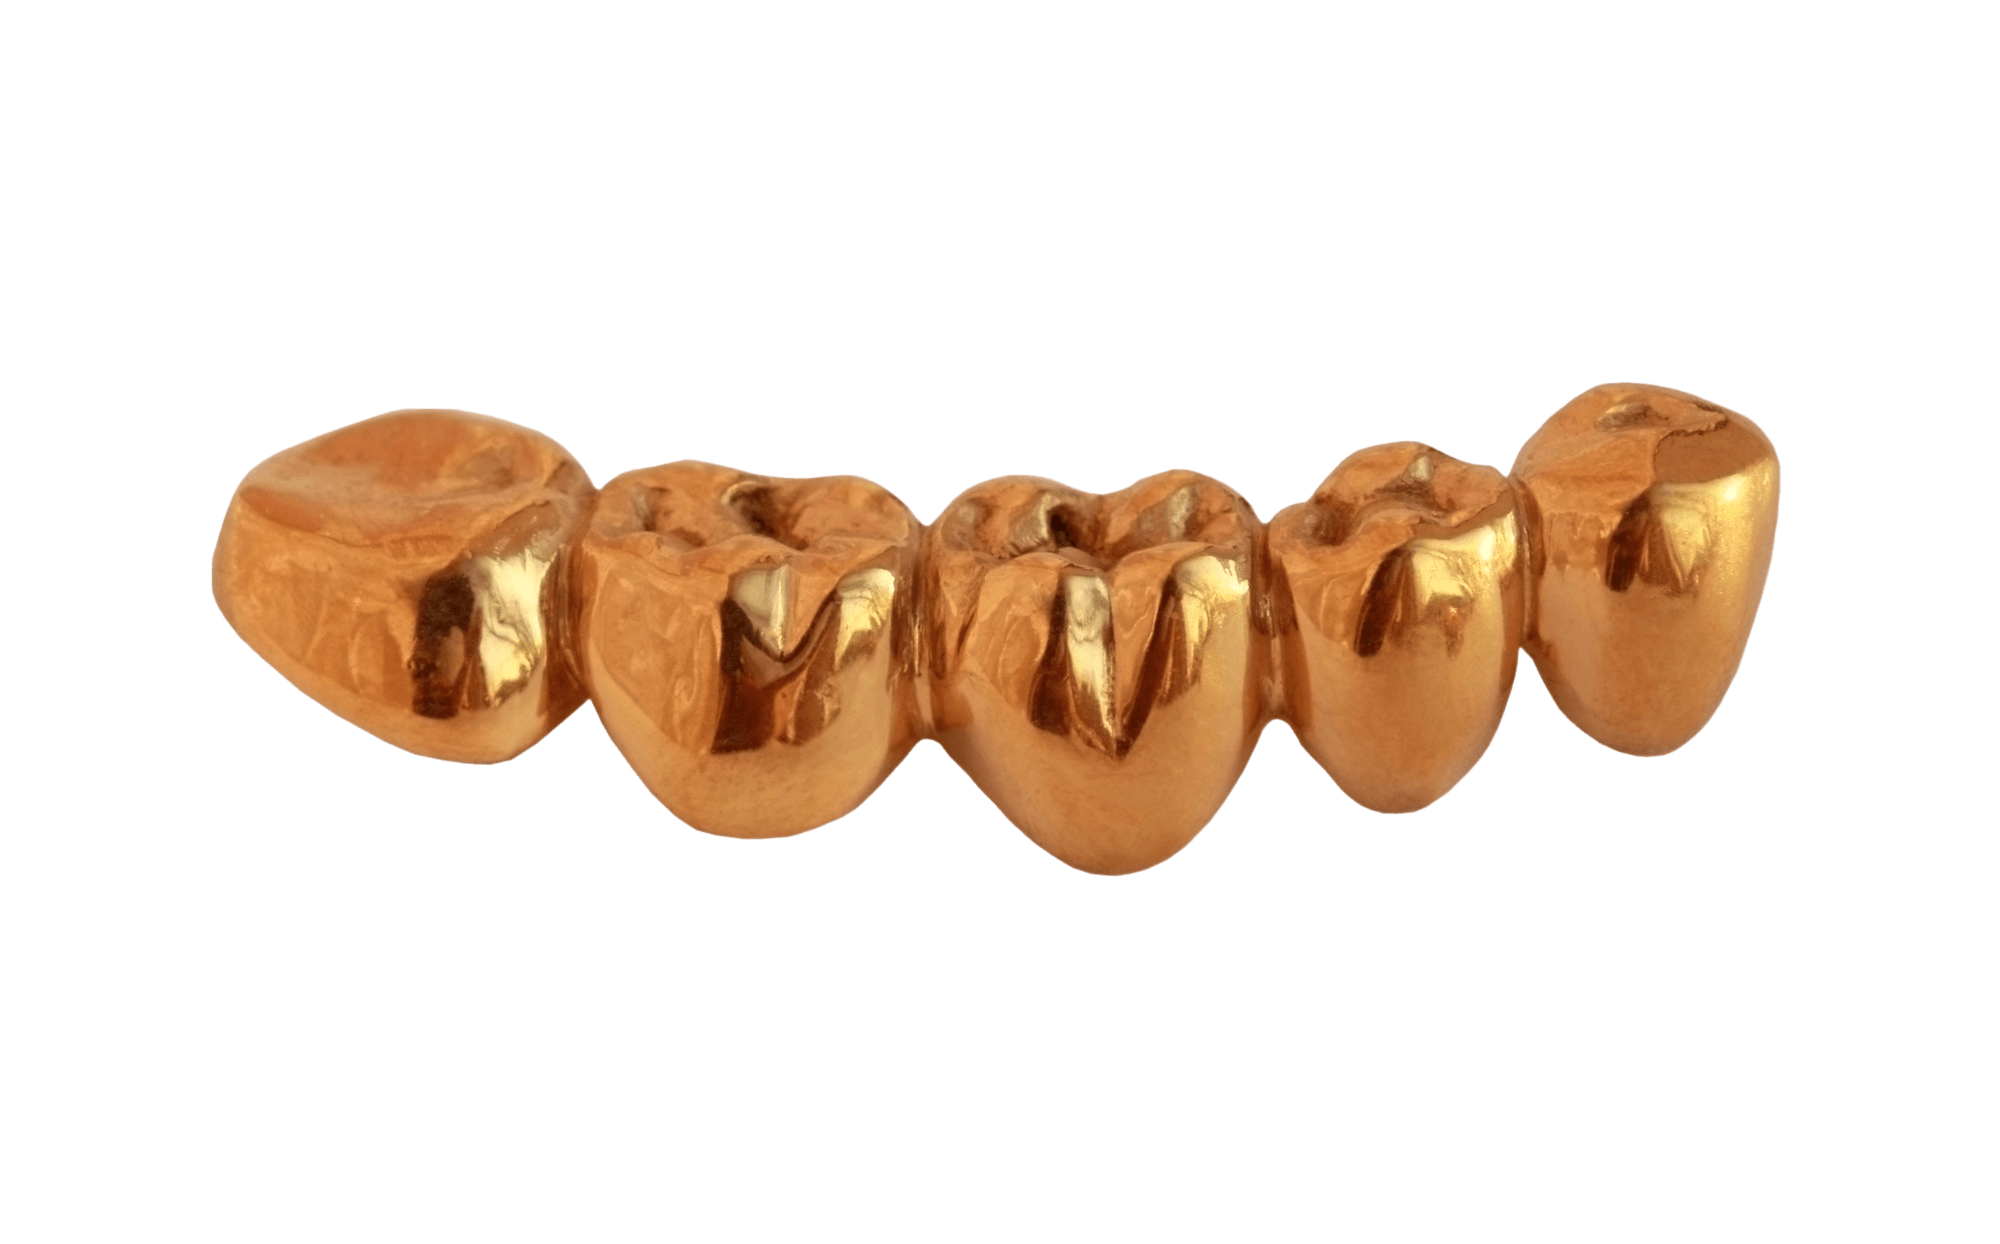 Golden Teeth